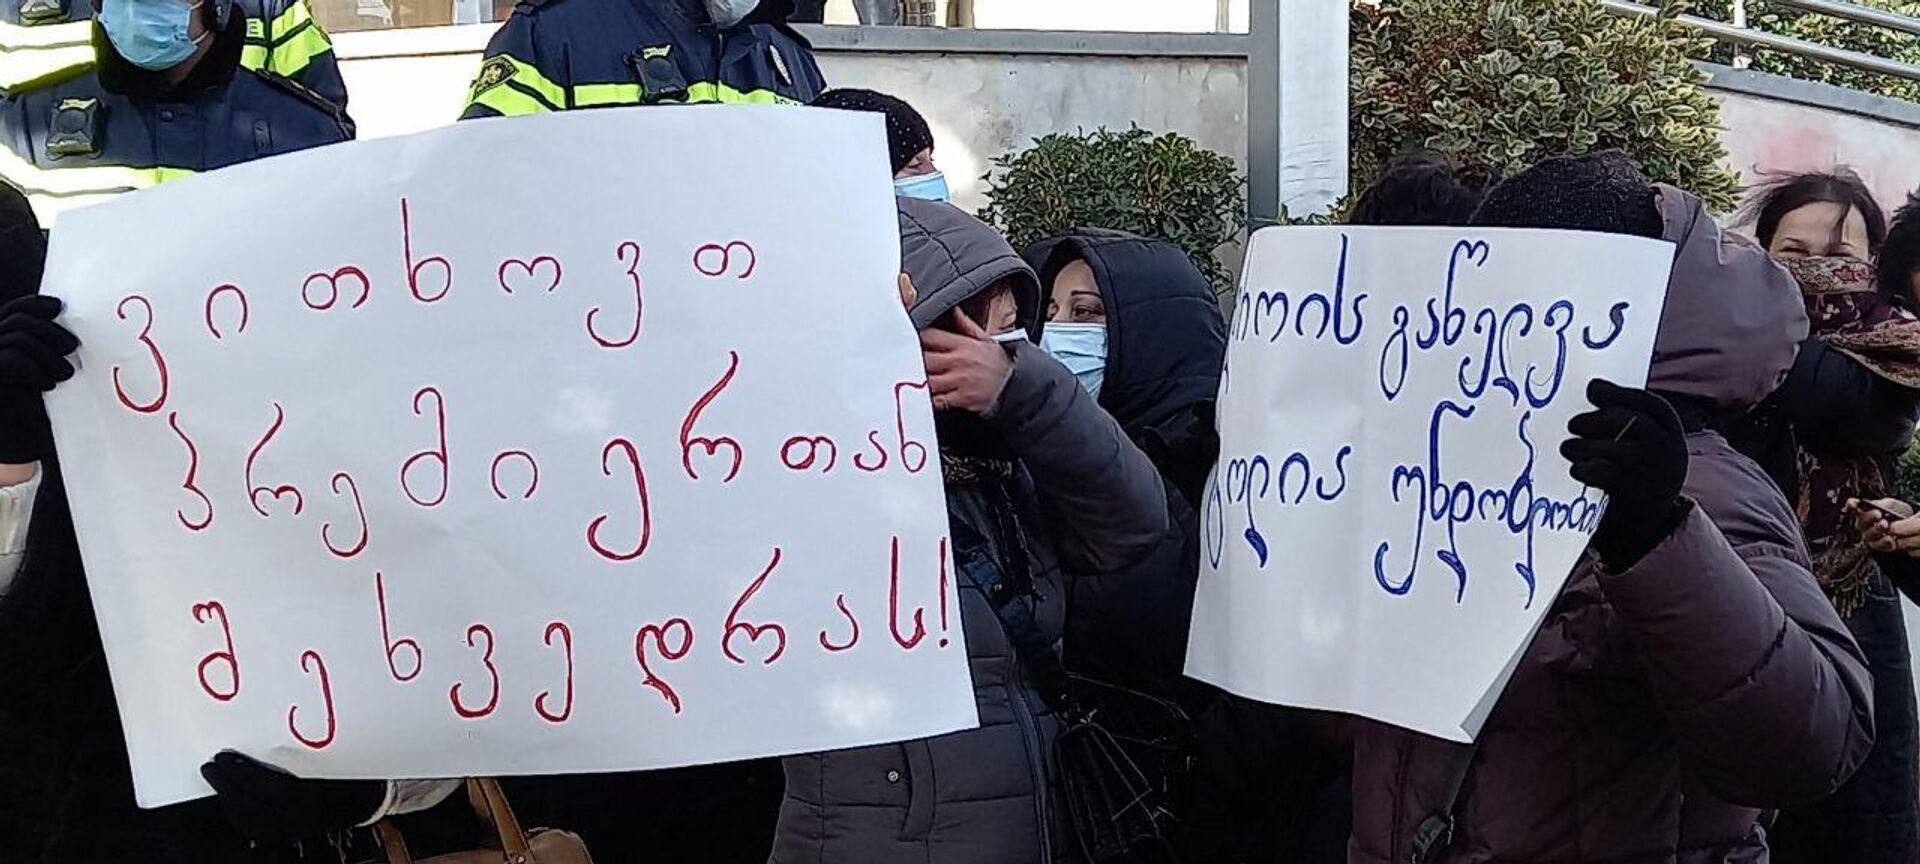 Работники Агентства социального обслуживания объявили забастовку у здания минздрава Грузии, 17 января 2022 года - Sputnik Грузия, 1920, 17.01.2022